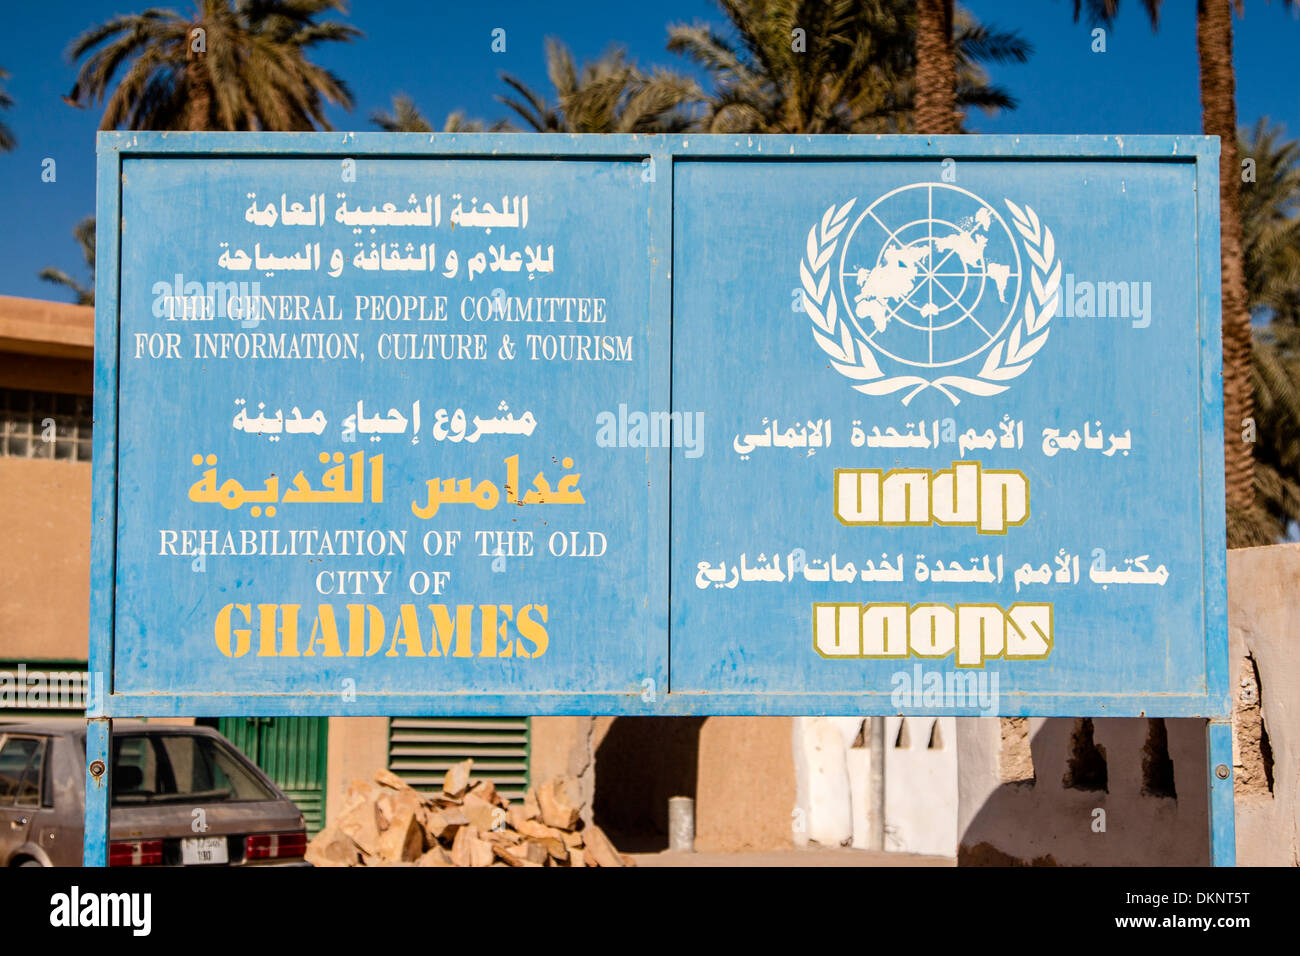 La Libye, Ghadames. Programme des Nations Unies pour le développement. Banque D'Images